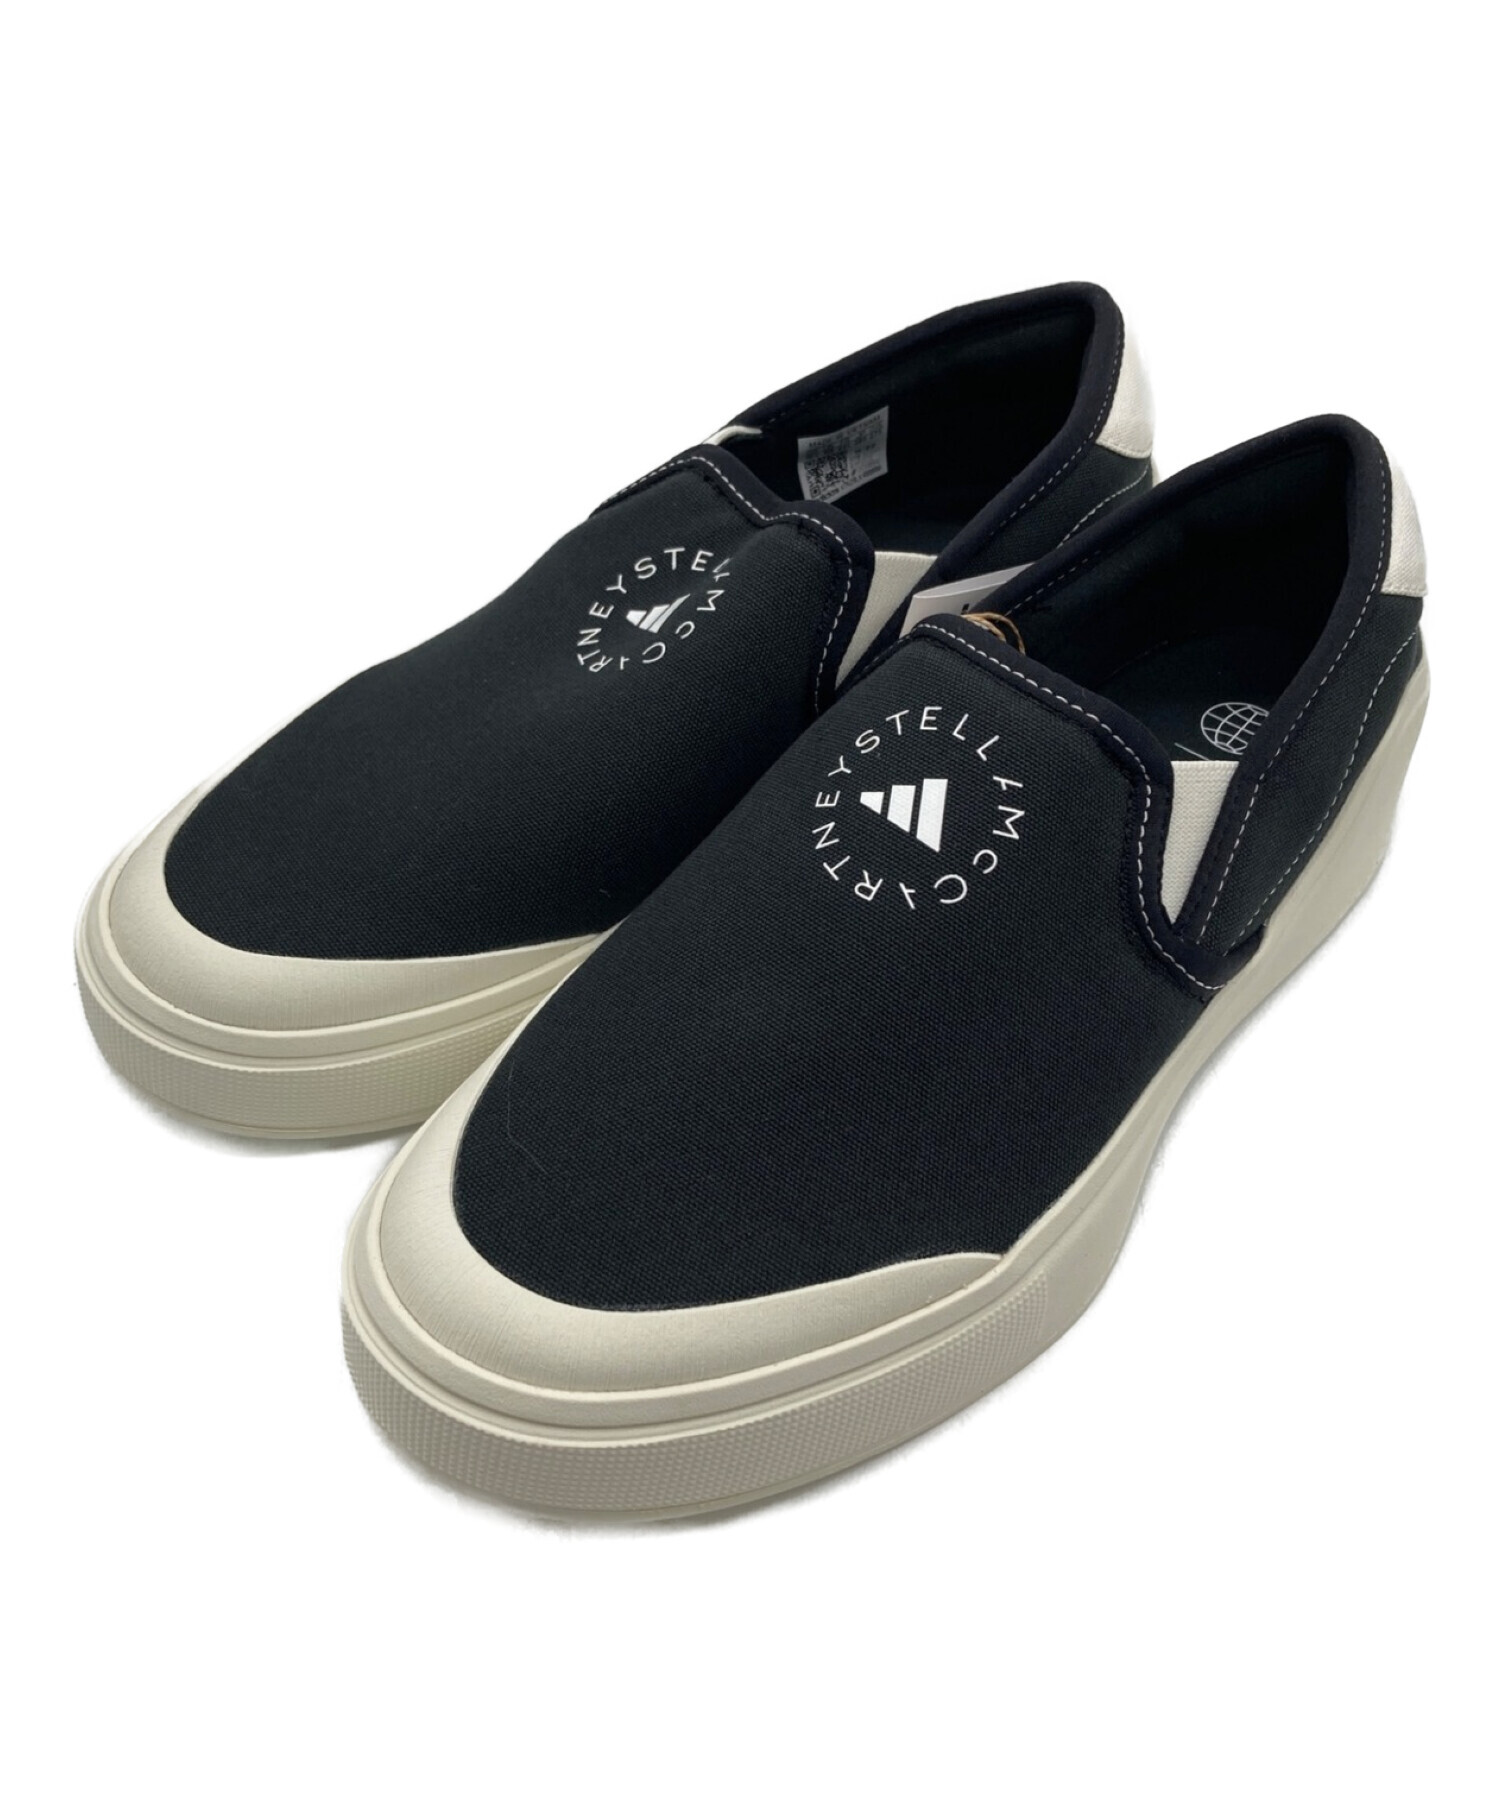 adidas (アディダス) STELLA McCARTNEY (ステラマッカートニー) コートスリッポン Court Slip-On ブラック  サイズ:US 10.5 UK 10 未使用品